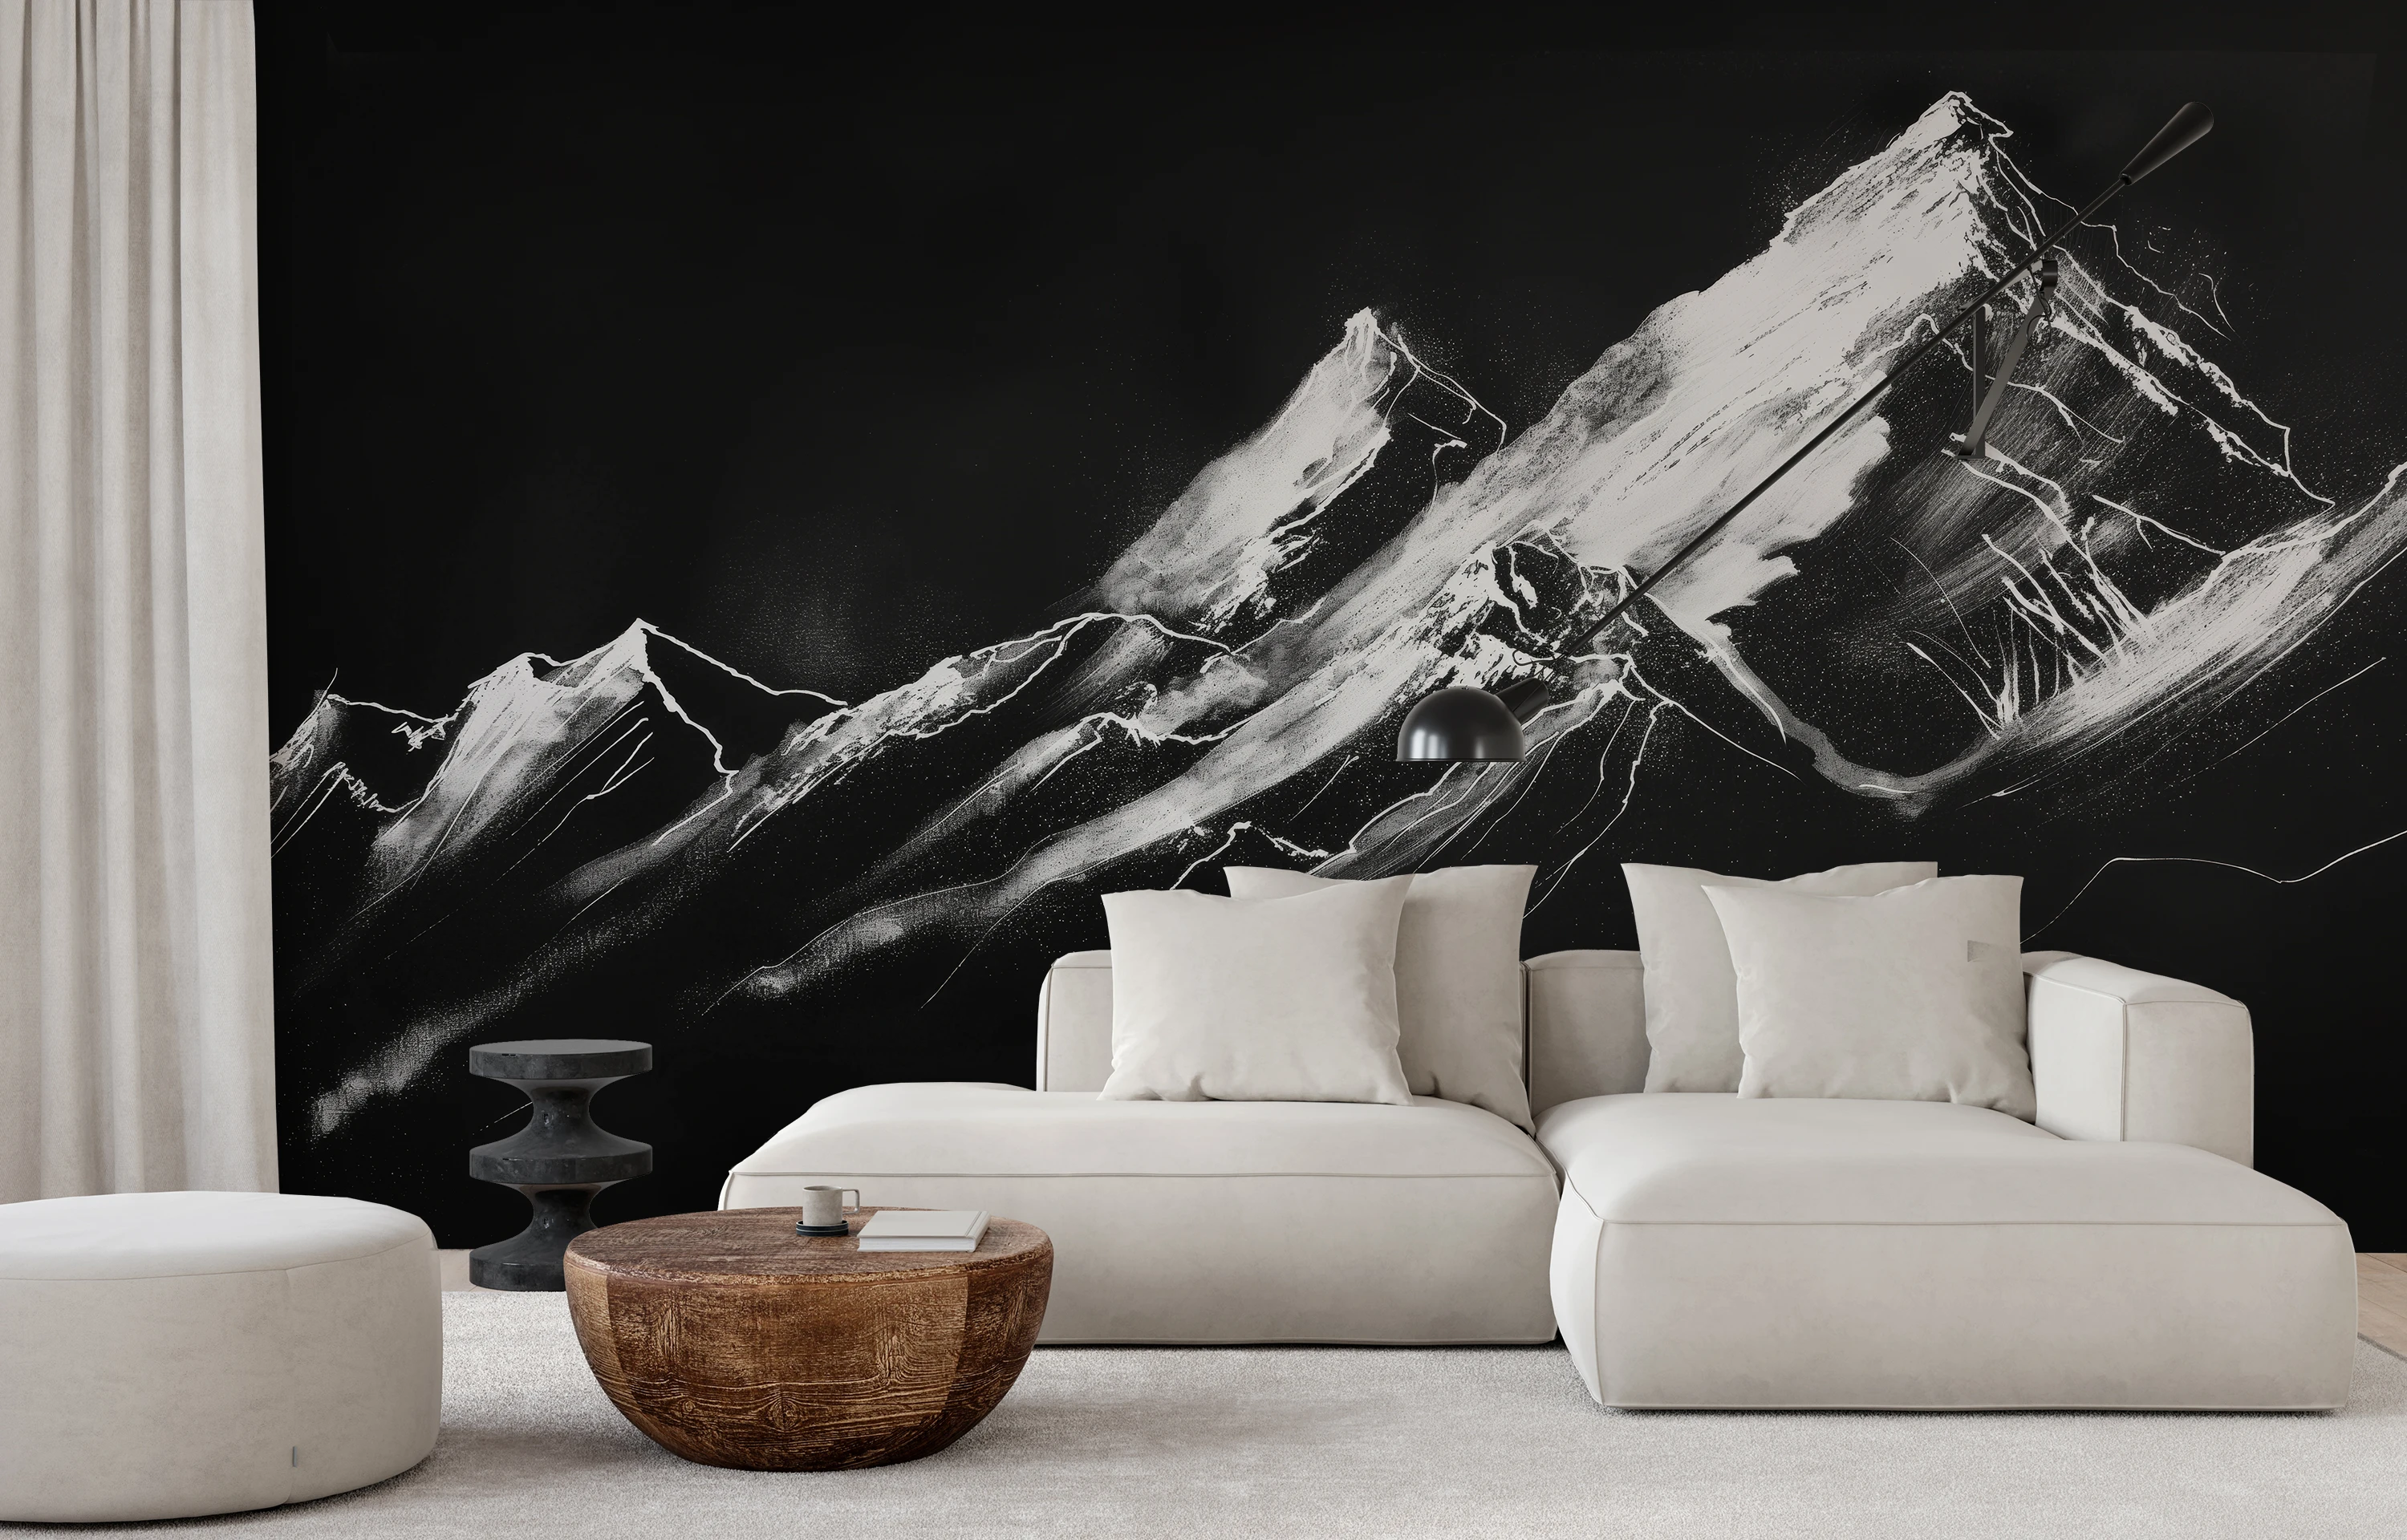 Eine schwarz-weiße Fototapete mit einem dynamischen Bergporträt, dessen Licht- und Schattenspiel dem Raum einen modernen, monochromatischen Look verleiht.